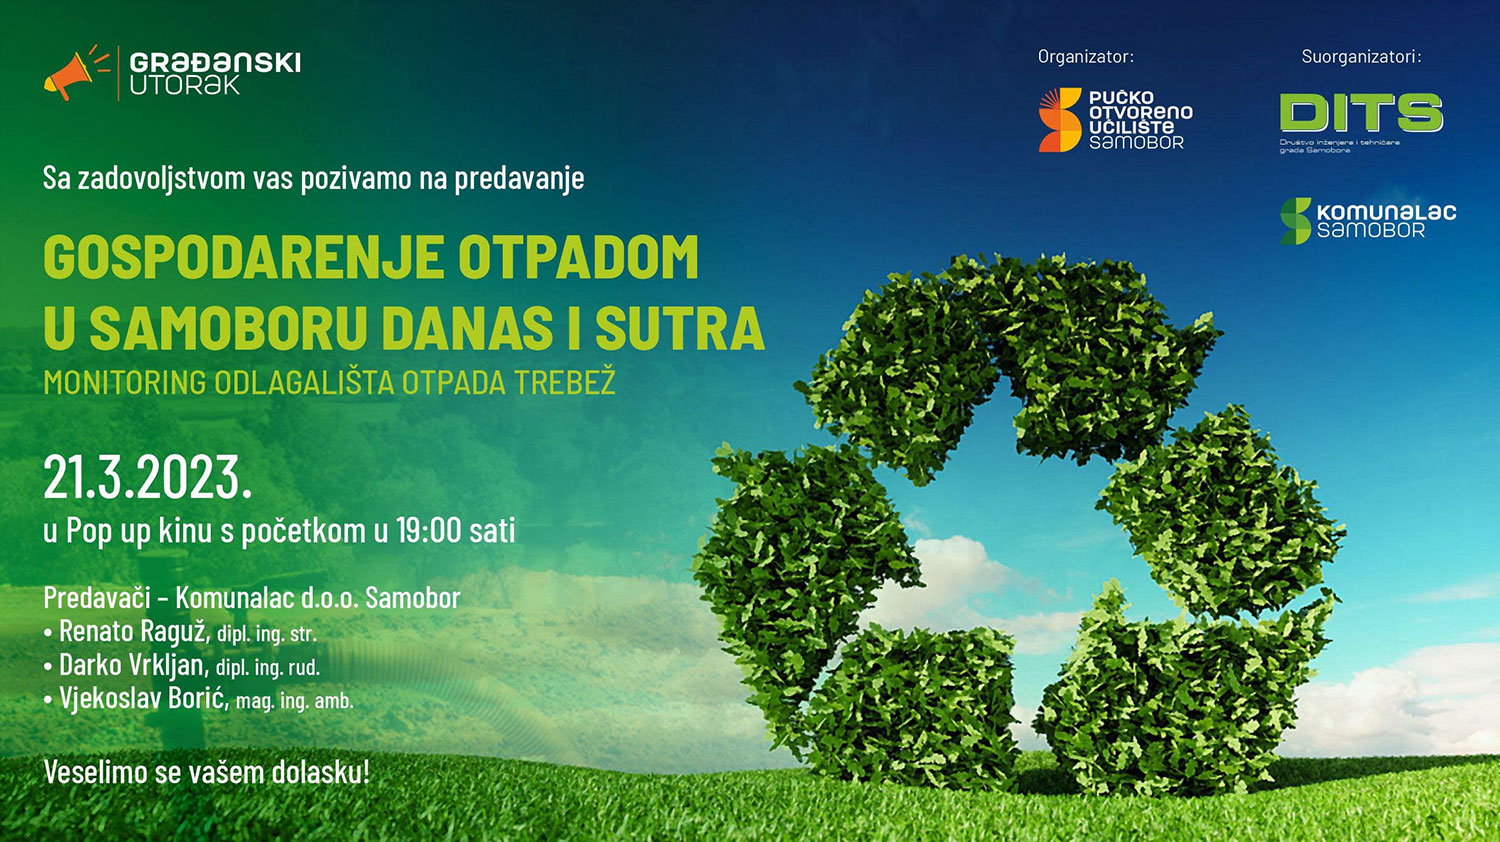 Sljedeći Građanski utorak na temu zbrinjavanja otpada u organizaciji POU i Udruge inženjera i tehničara Grada Samobora